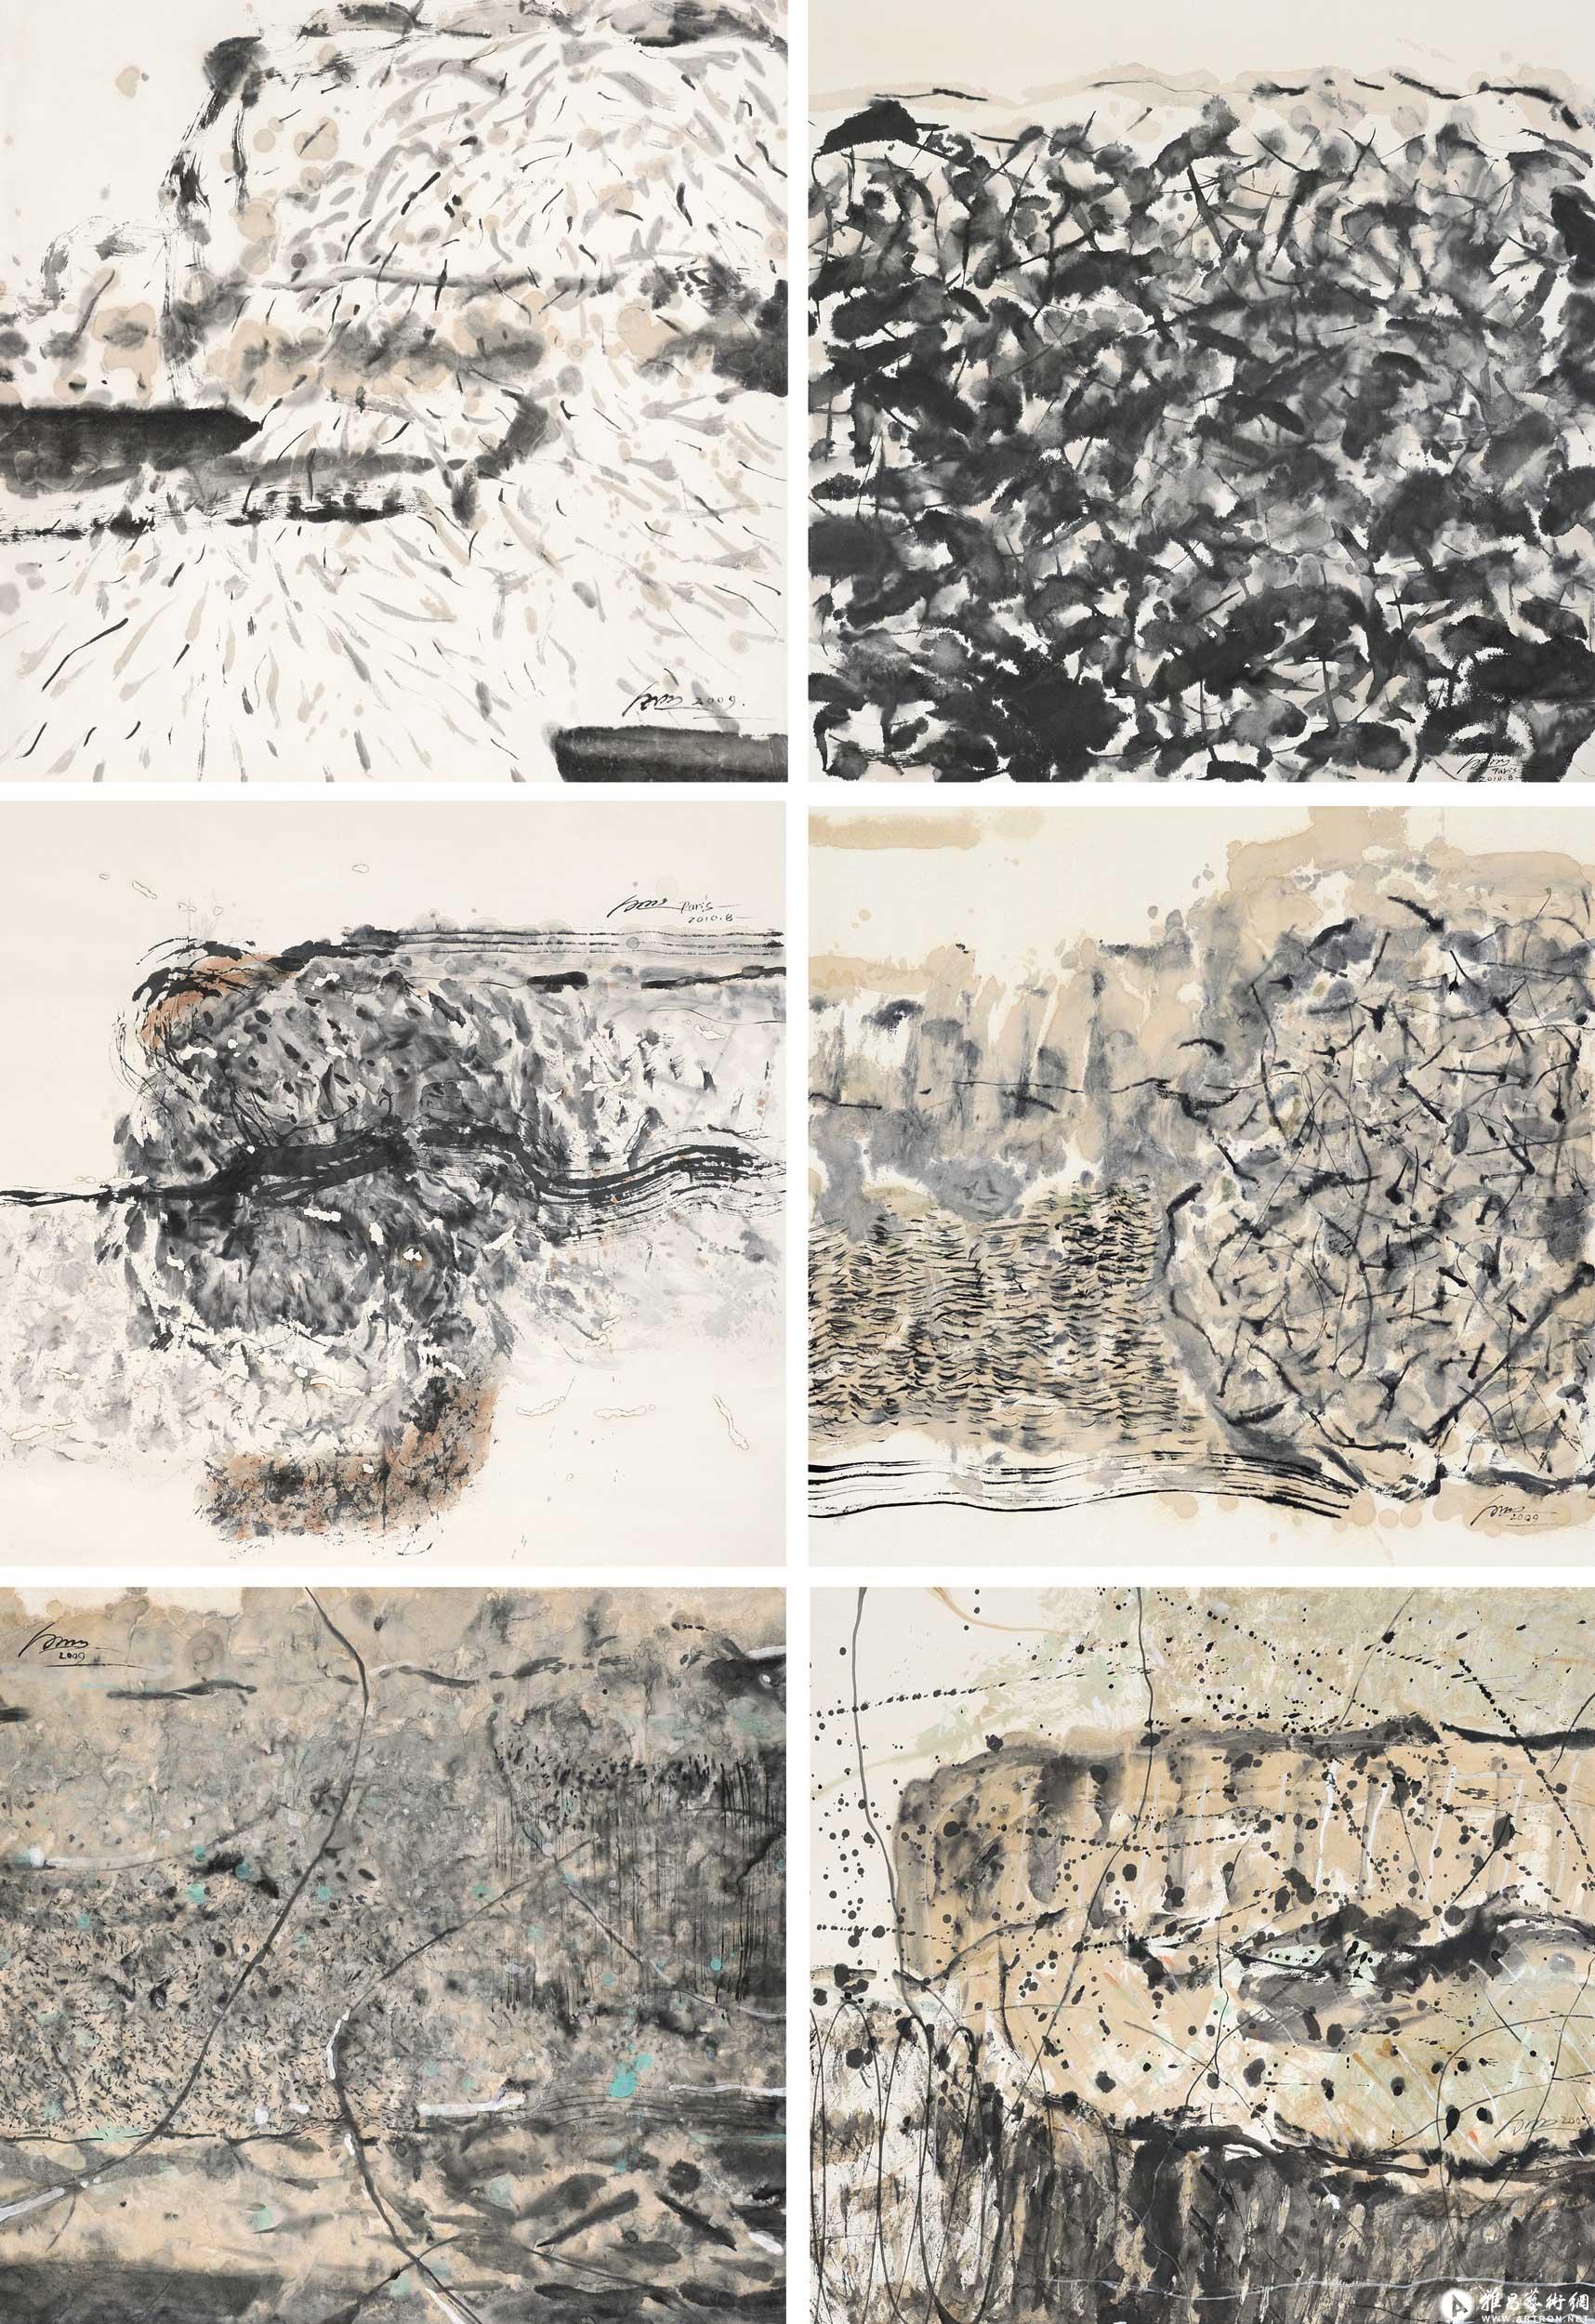 水墨之山水研究系列001^_^The Study of Landscape Paintings in Ink Series 001